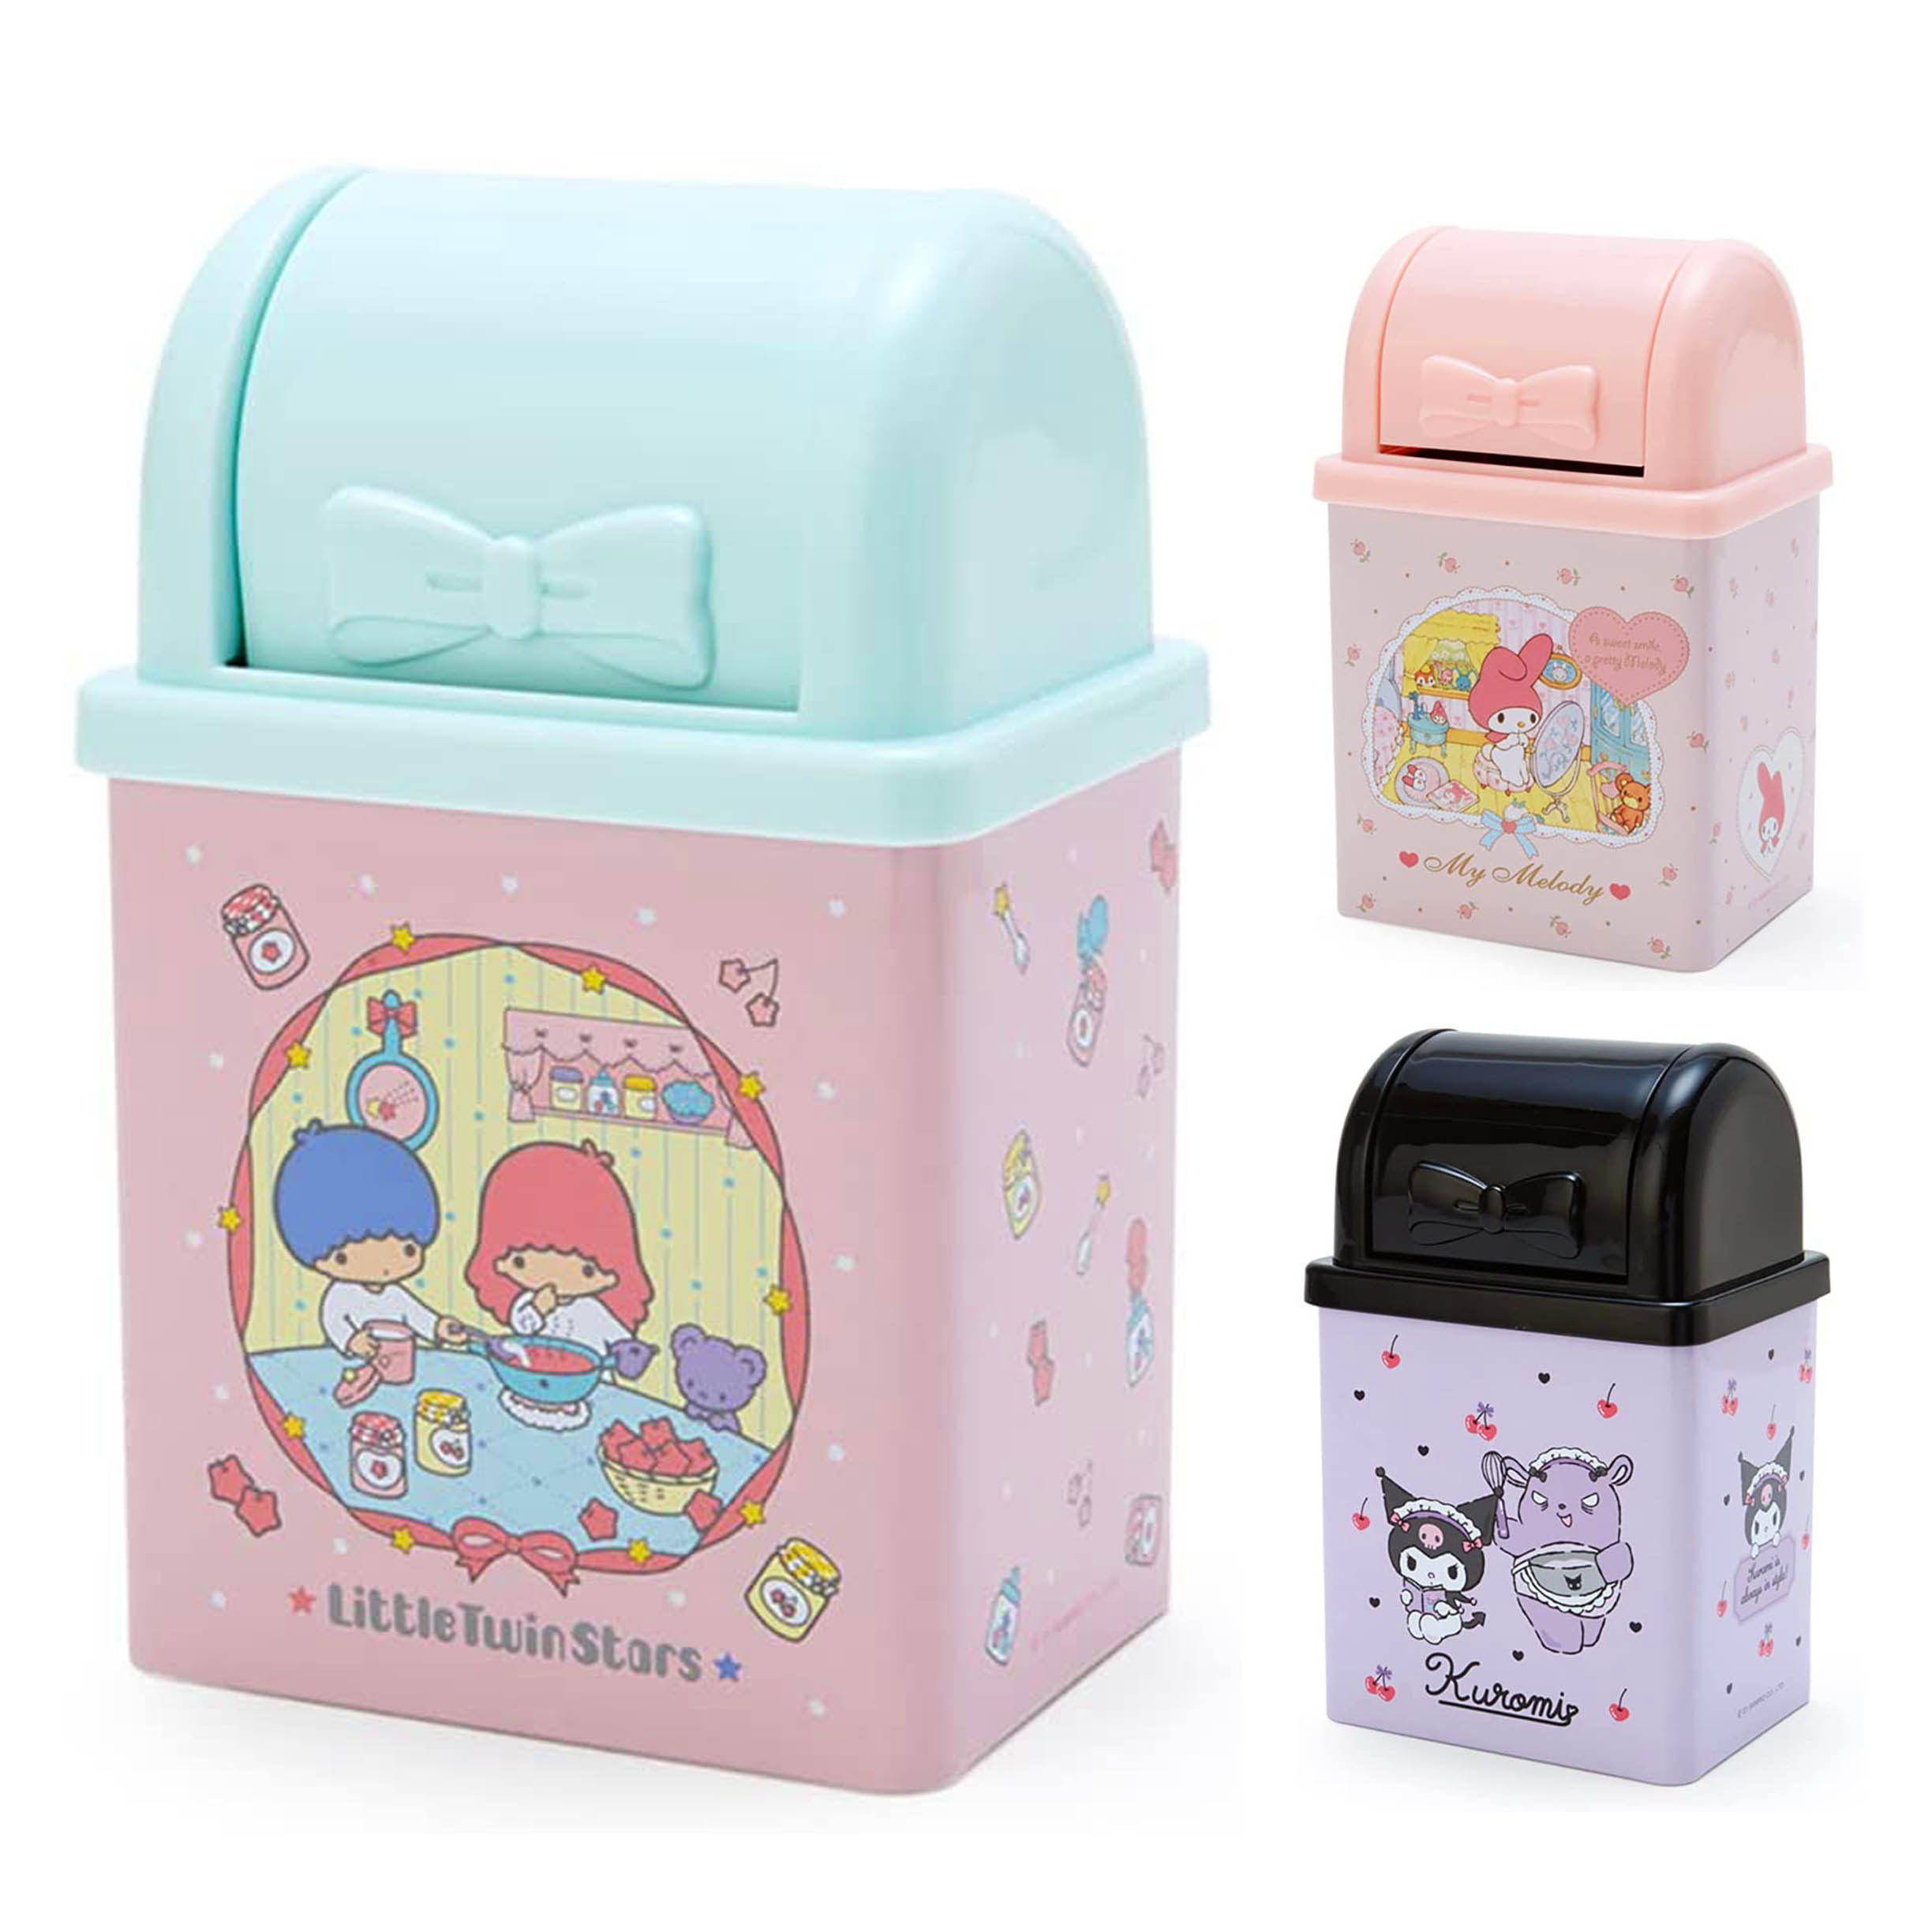 桌上型垃圾桶-三麗鷗 Sanrio Original 日本進口正版授權